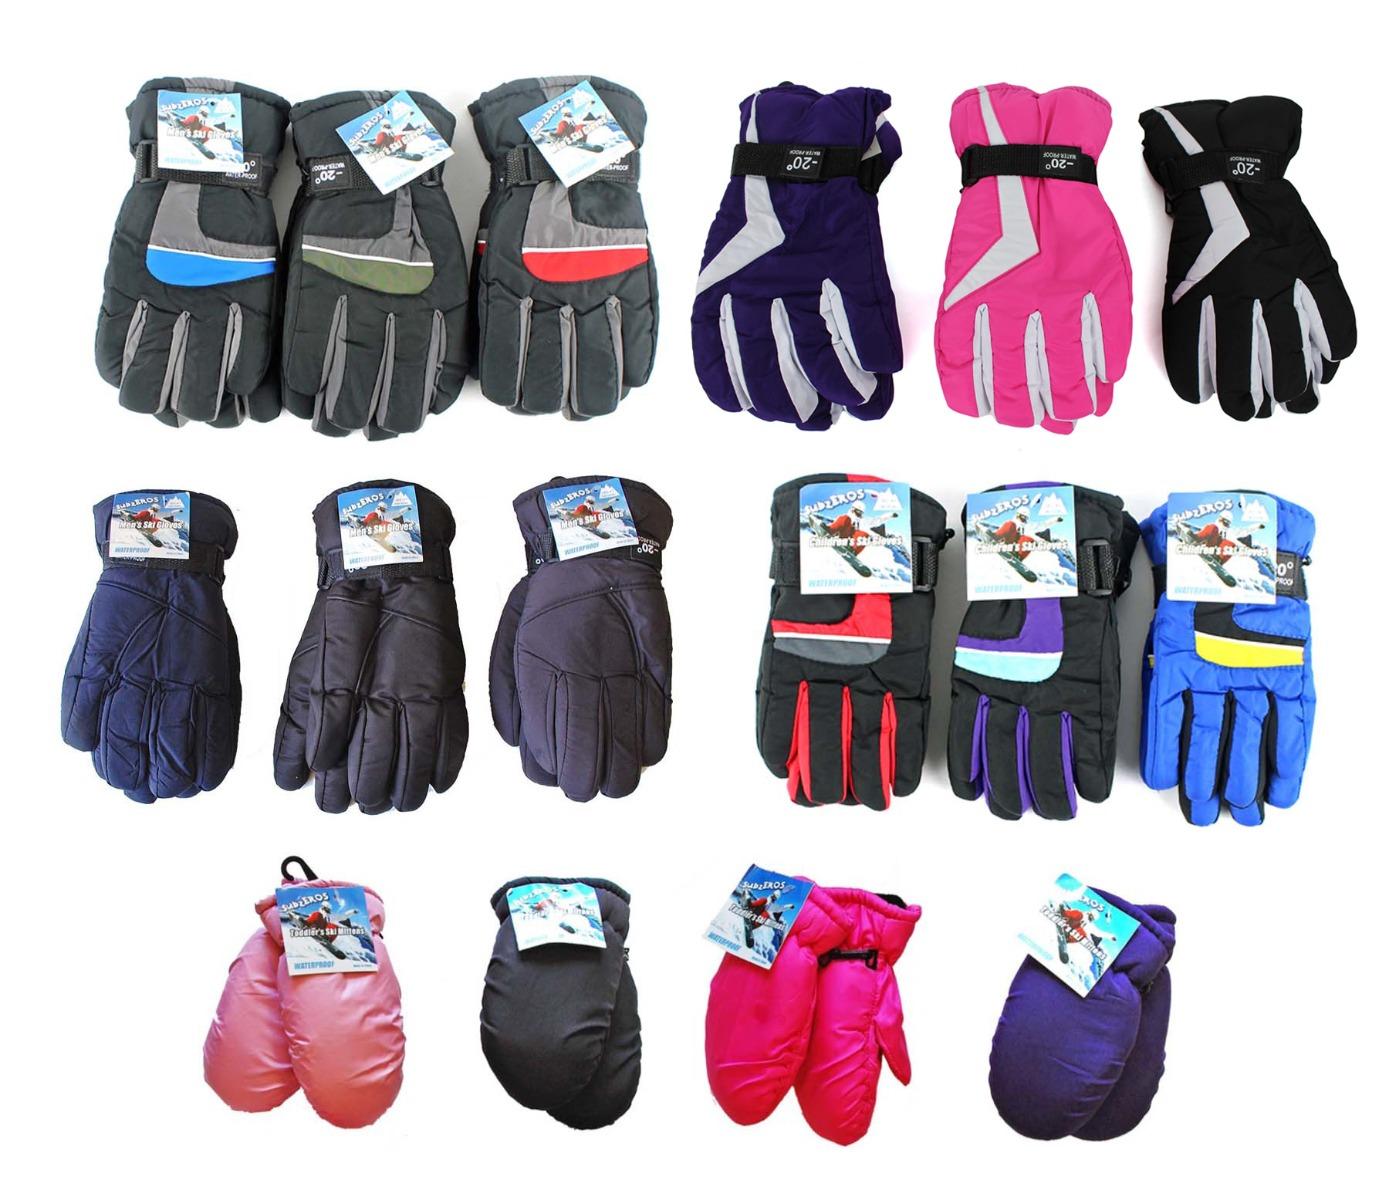 Family Ski Gloves Combo Pack